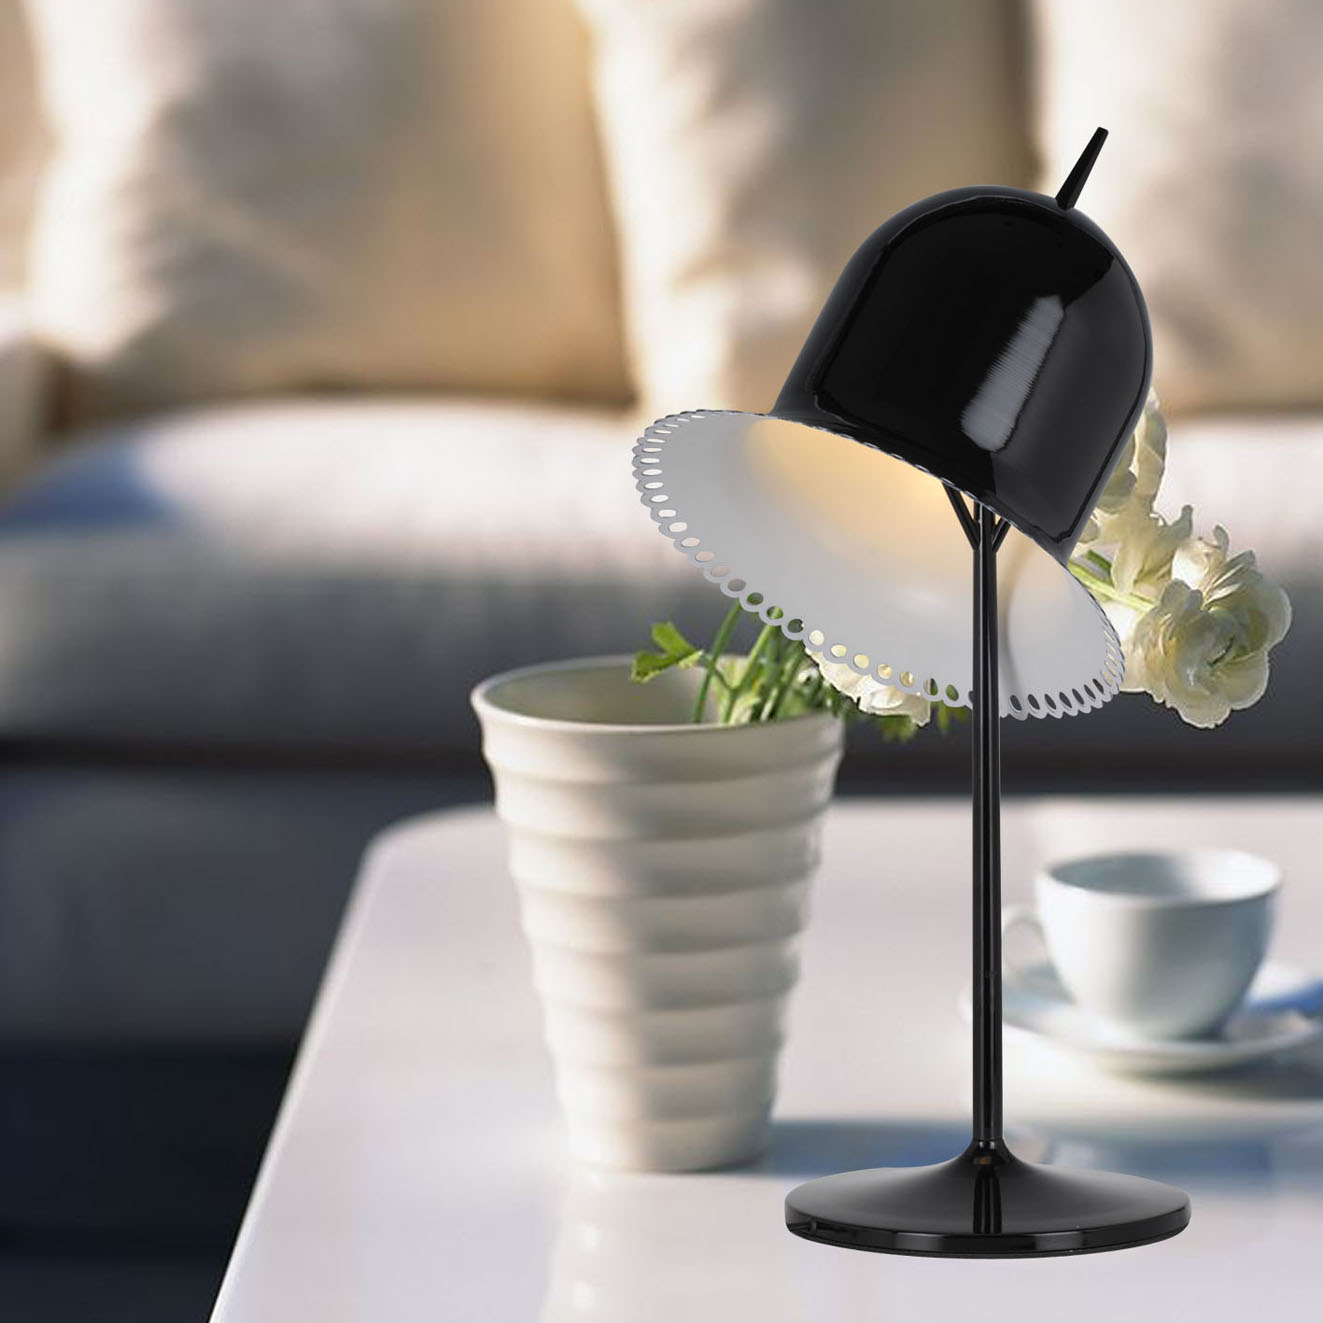 Fashion minimalist creative desk lamp TD-2036 black living room study Bedroom Table Lamp1